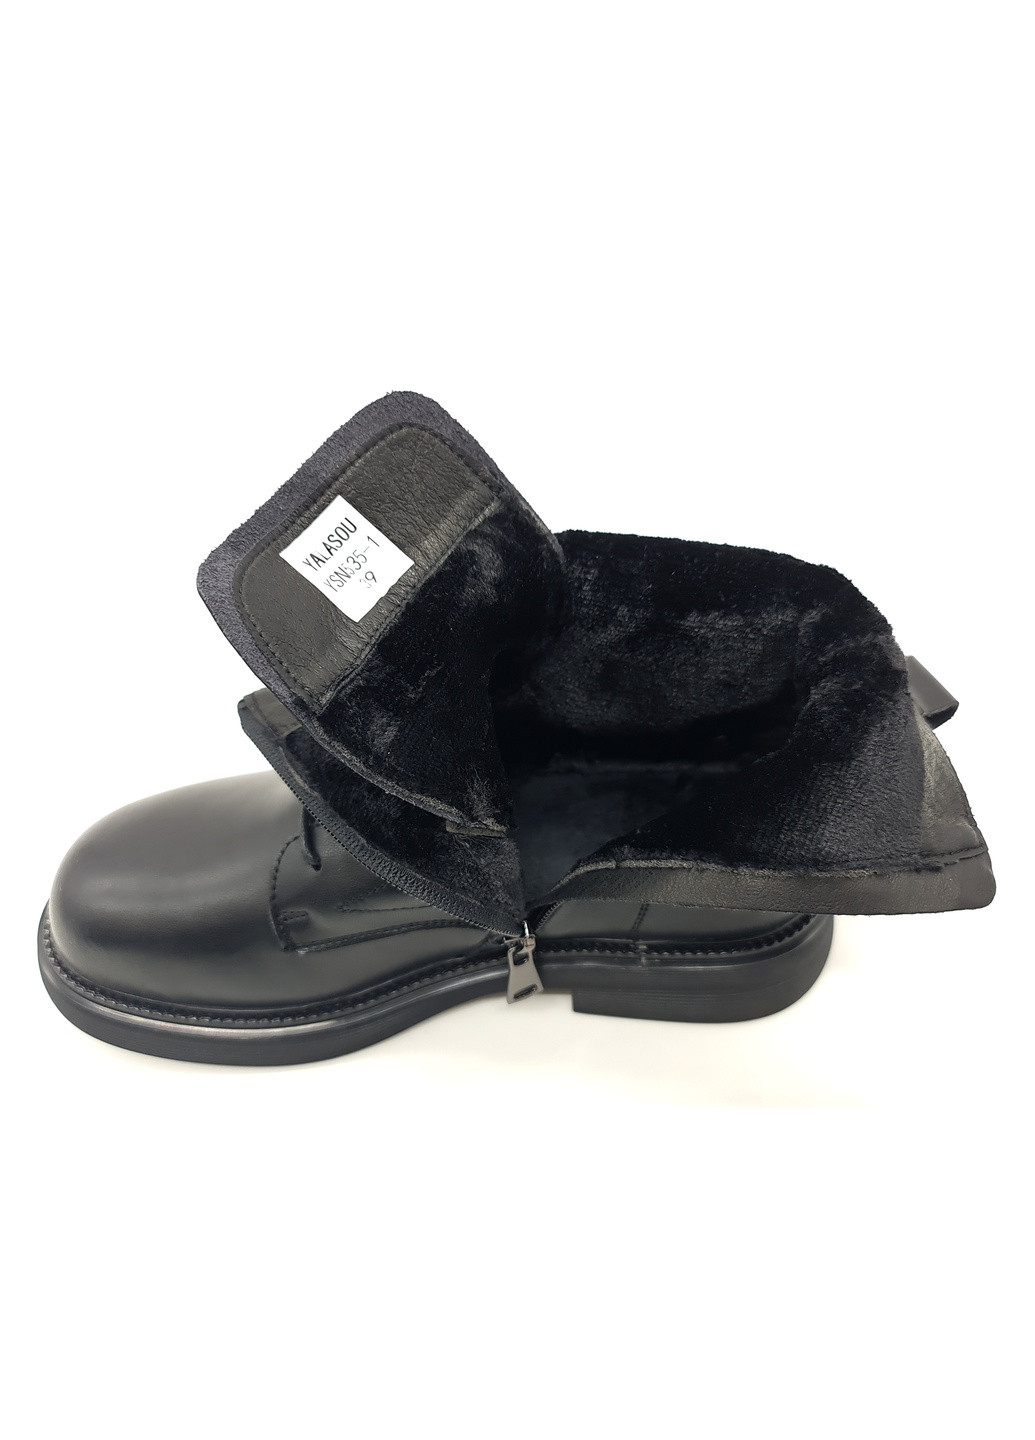 Осенние женские ботинки черные кожаные ya-12-2 23 см (р) Yalasou